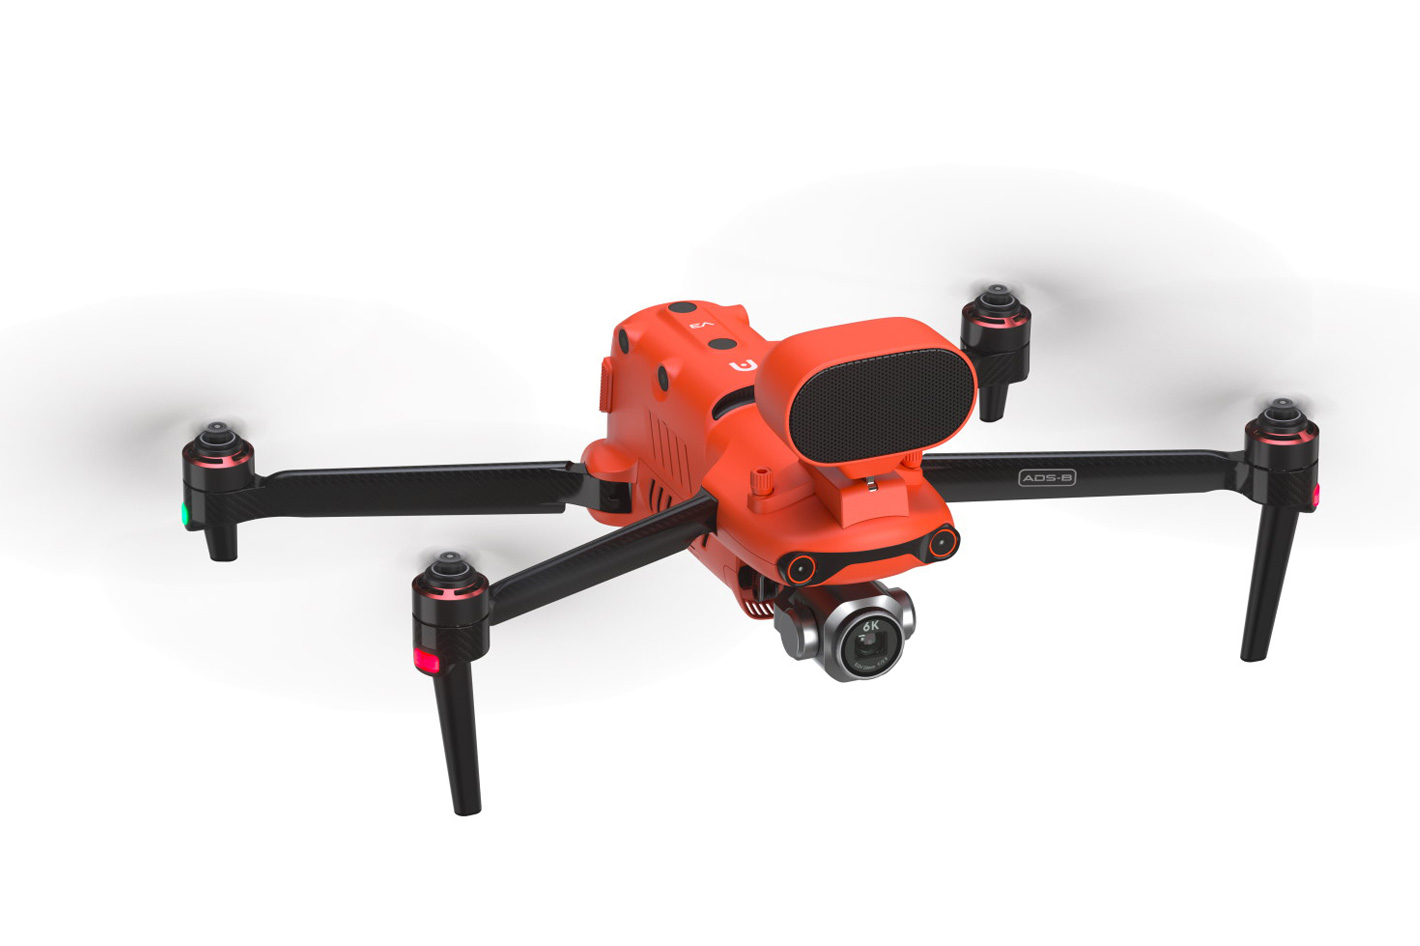 Autel Robotics shows new drones at IFA 2022